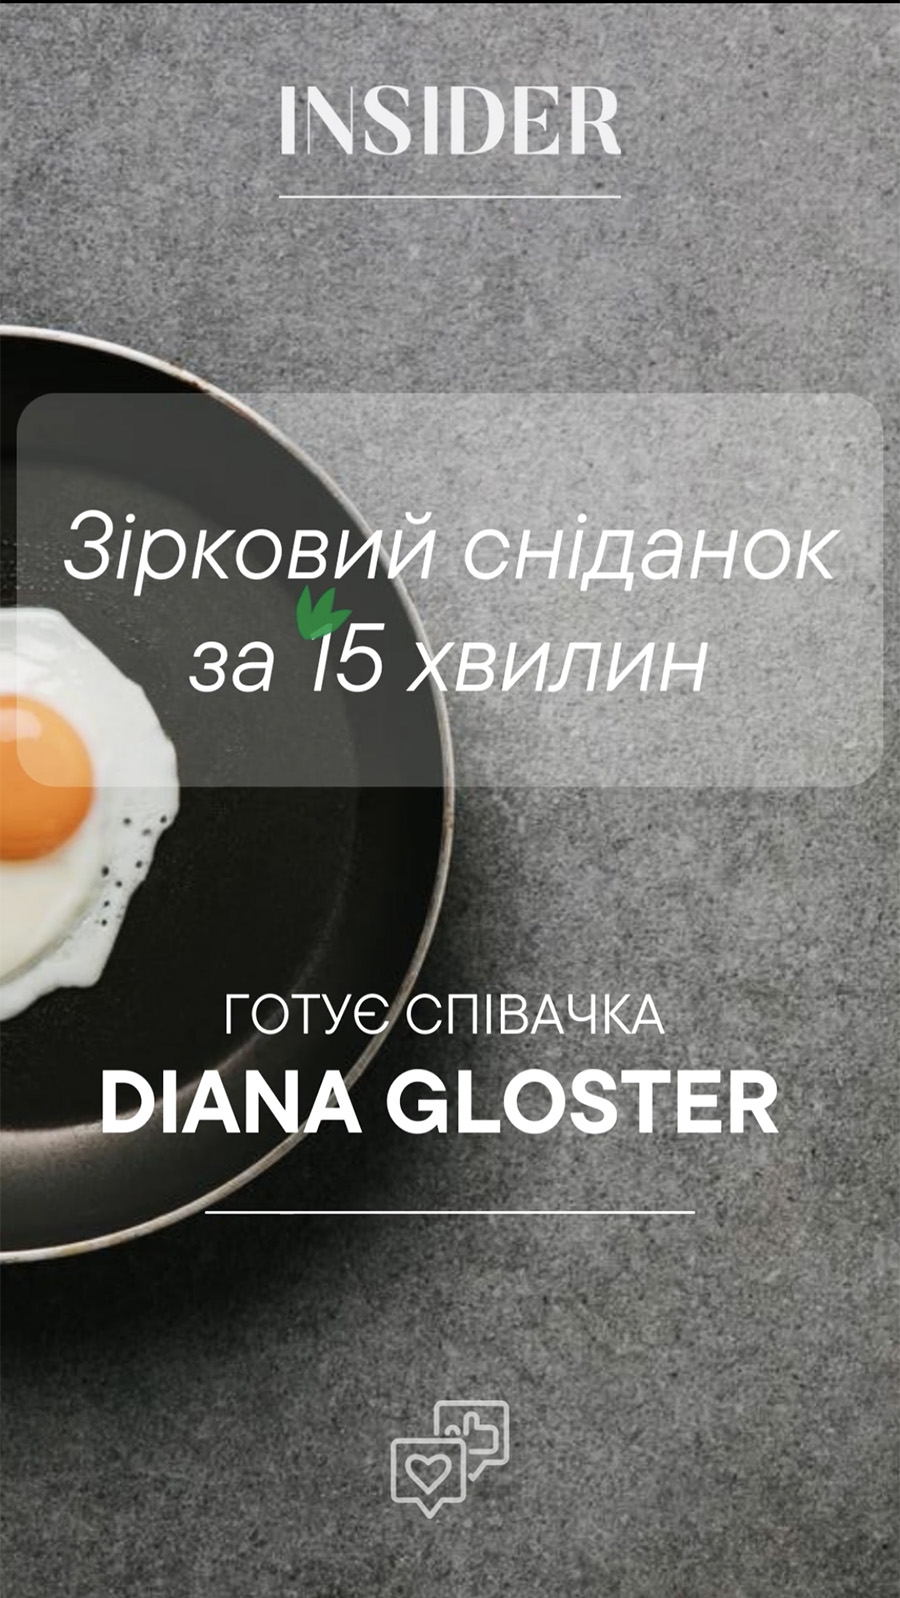 Звездный завтрак за 15 минут: готовит певица и блогер Diana Gloster